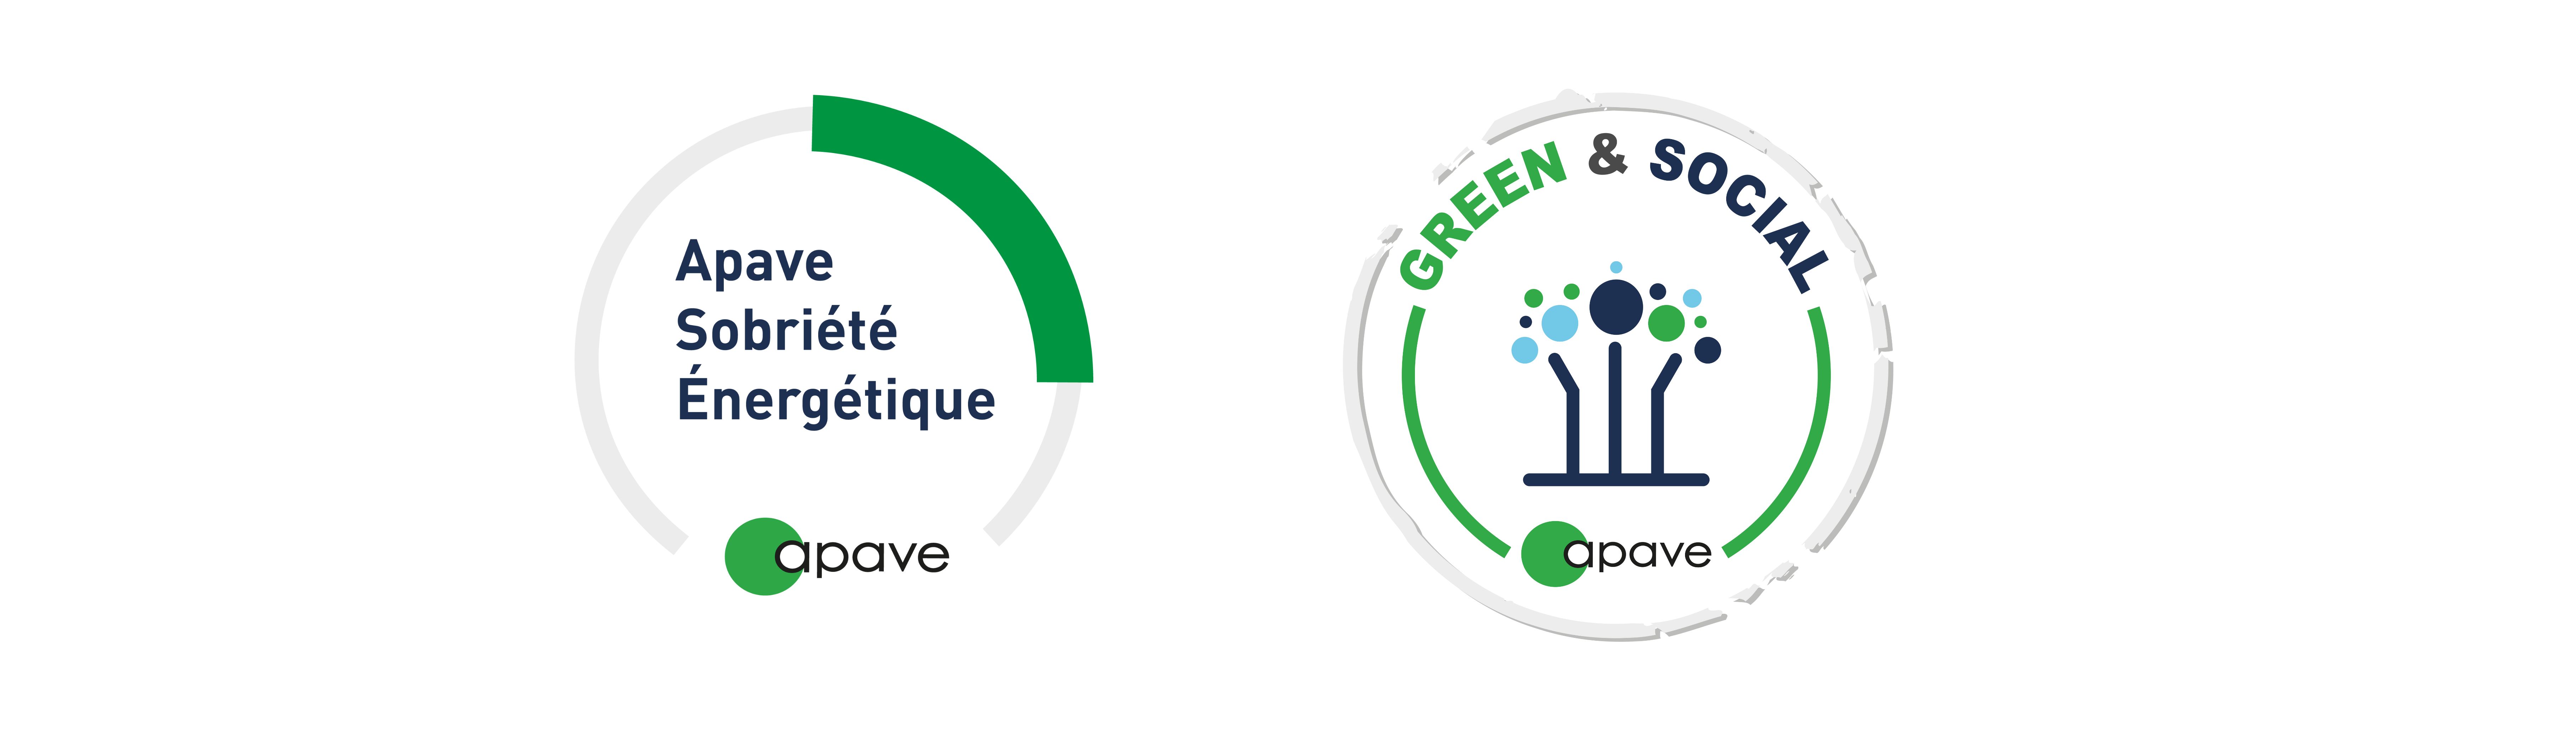 Logos Label Apave Sobriété Energétique et Green and Social